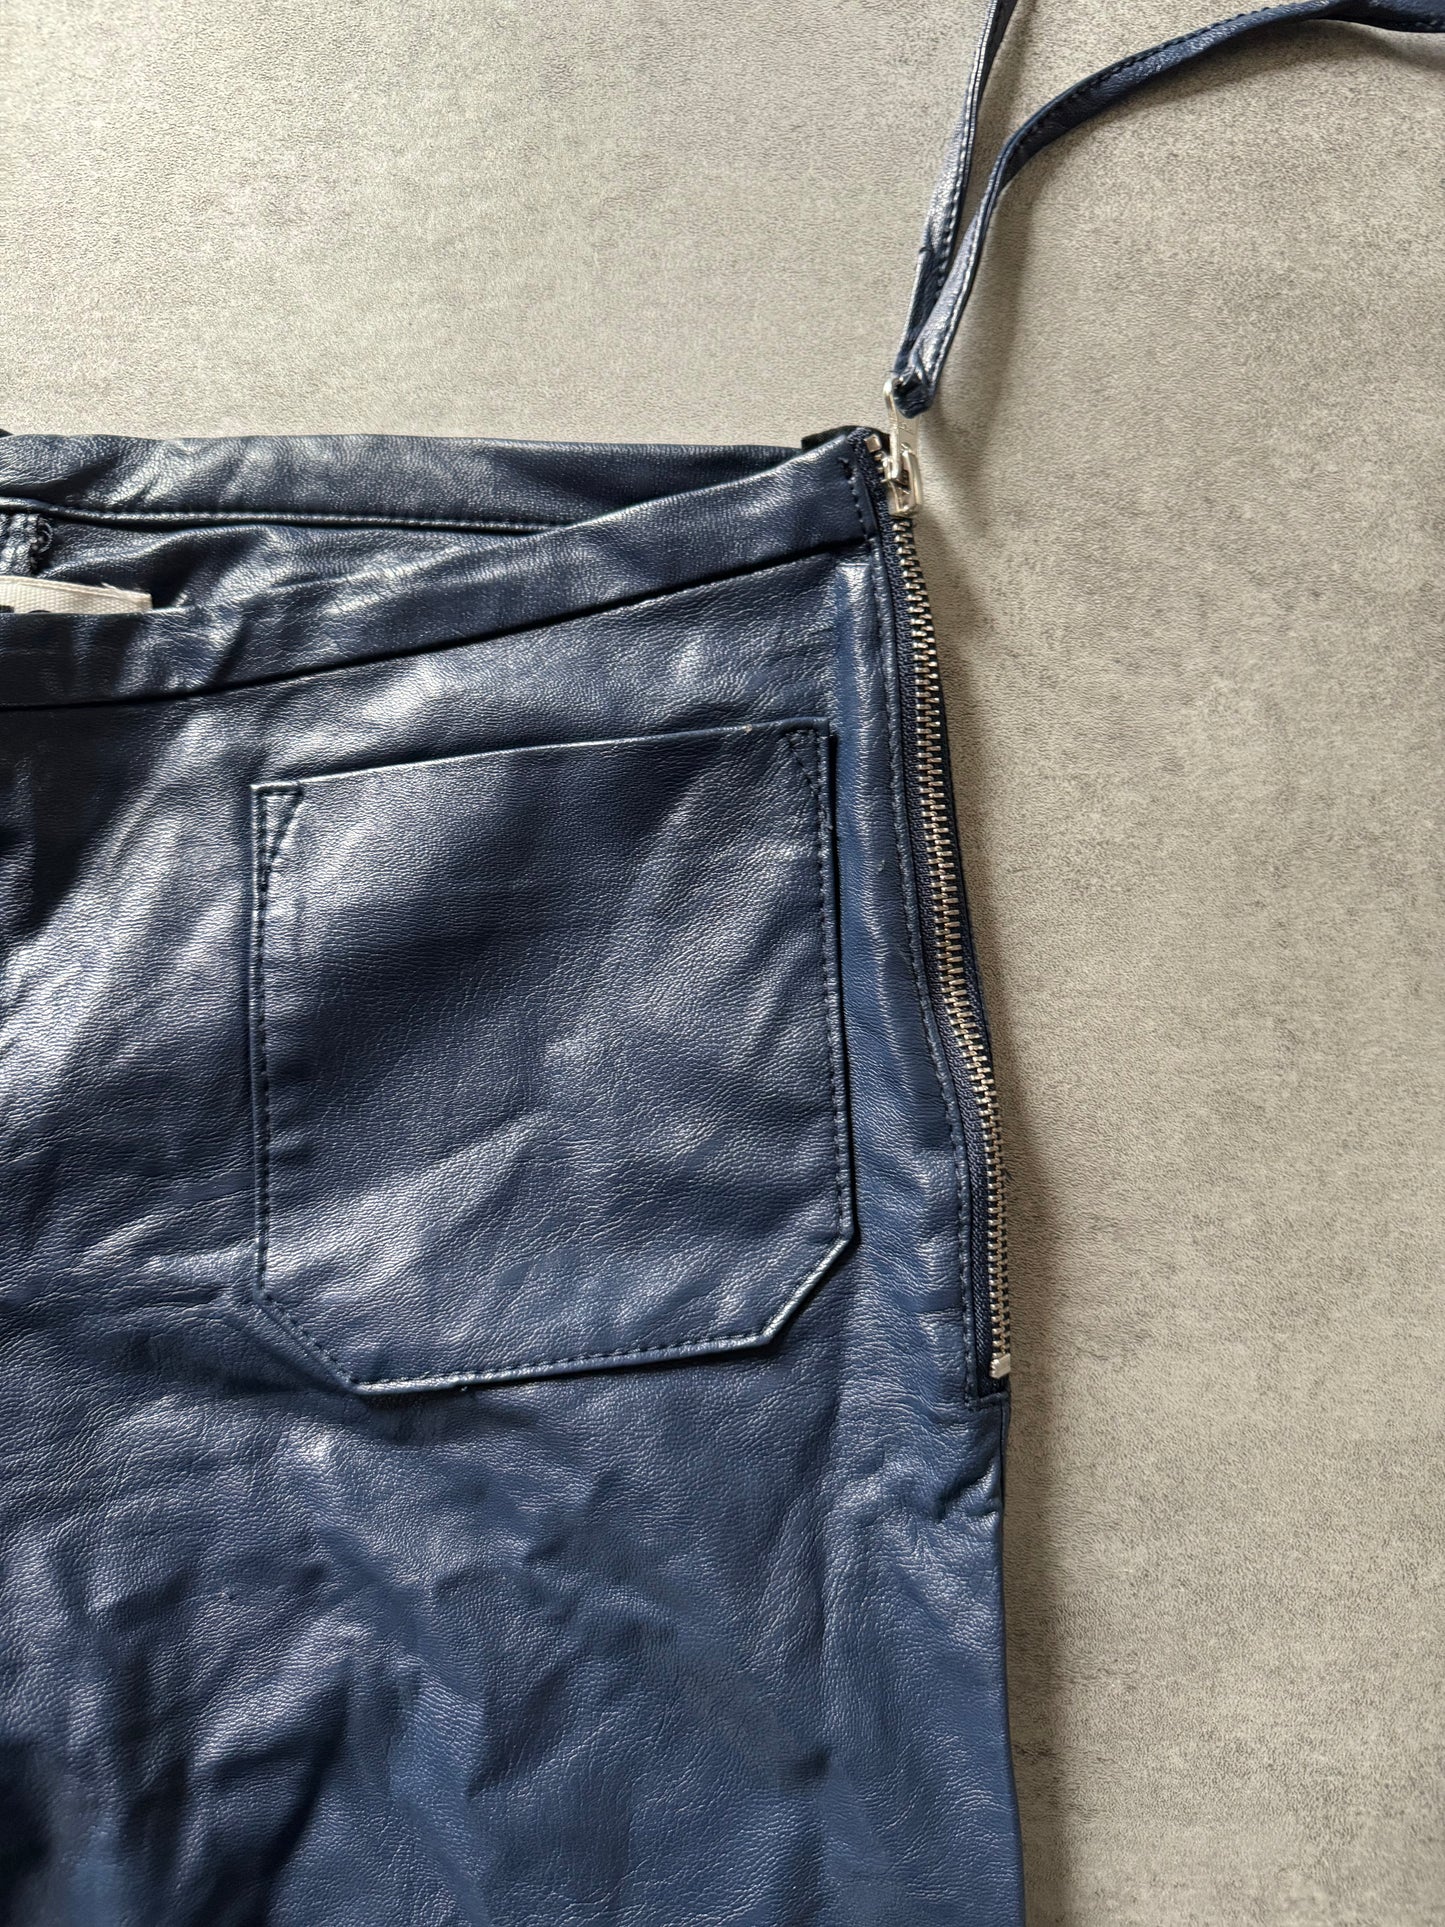 AW2016 Maison Margiela Blue Leather Flared Pants  (M) - 8